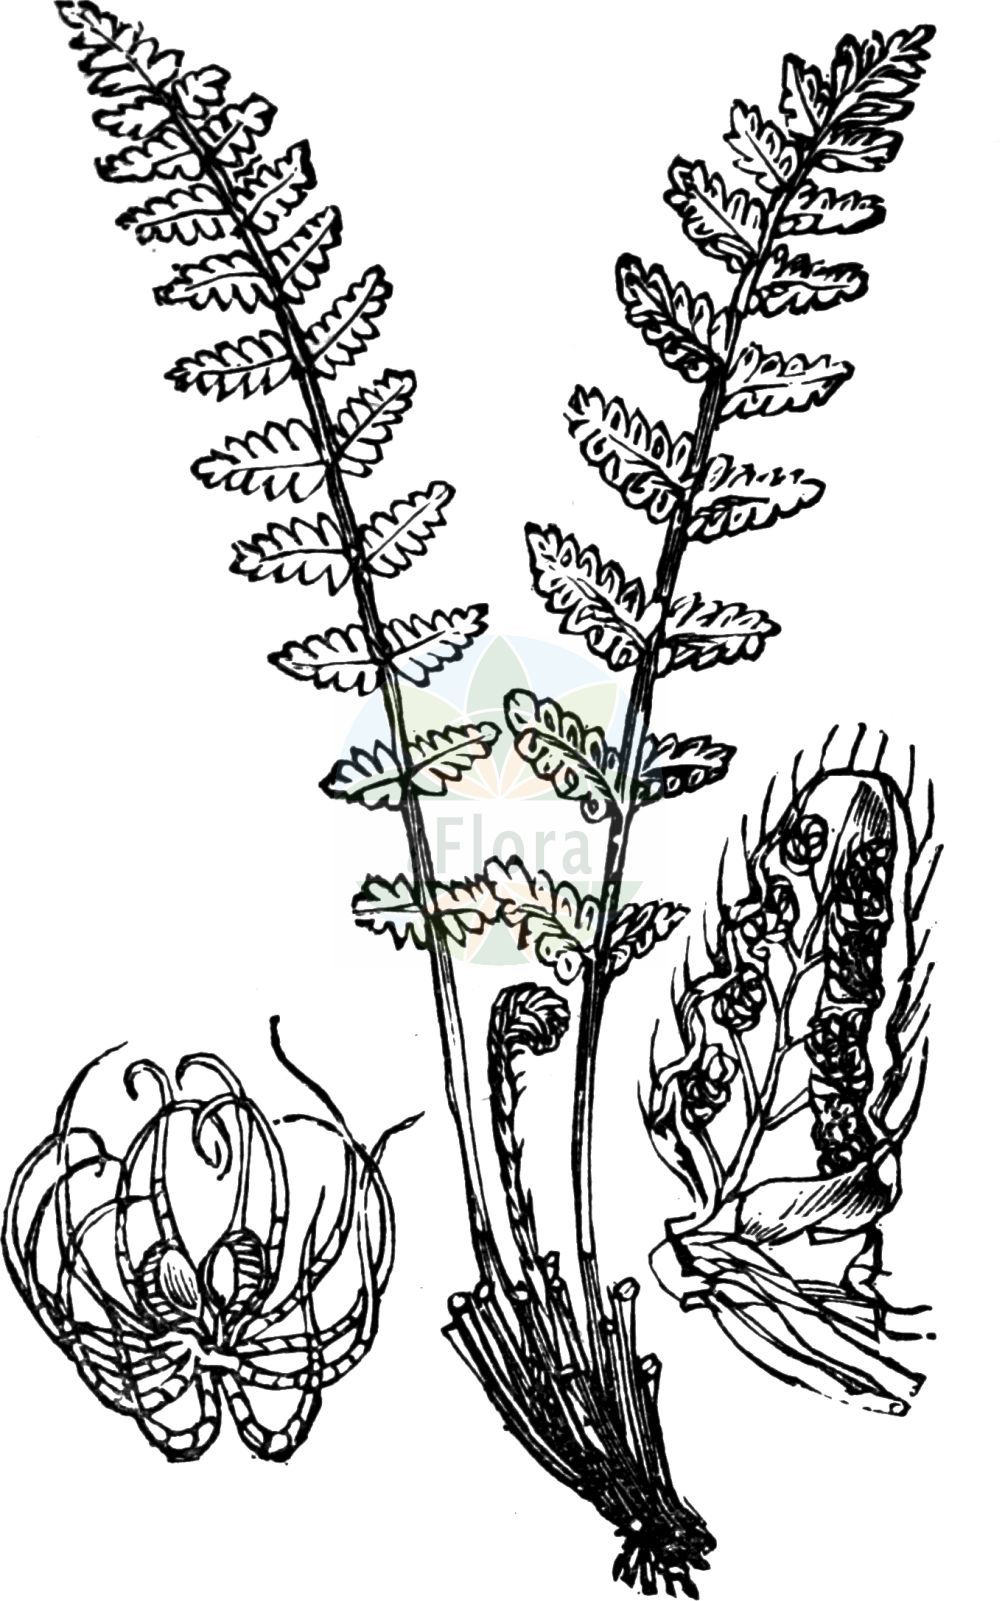 Historische Abbildung von Woodsia ilvensis (Südlicher Wimperfarn - Oblong Woodsia). Das Bild zeigt Blatt, Bluete, Frucht und Same. ---- Historical Drawing of Woodsia ilvensis (Südlicher Wimperfarn - Oblong Woodsia). The image is showing leaf, flower, fruit and seed.(Woodsia ilvensis,Südlicher Wimperfarn,Oblong Woodsia,Acrostichum ilvense,Nephrodium rufidulum,Woodsia ilvensis,Woodsia rufidula,Suedlicher Wimperfarn,Rostroter Wimperfarn,Oblong Woodsia,Rusty Woodsia,Woodsia,Wimperfarn,Cliff Fern,Woodsiaceae,Wimperfarngewächse,Cliff Fern family,Blatt,Bluete,Frucht,Same,leaf,flower,fruit,seed,Fitch et al. (1880))